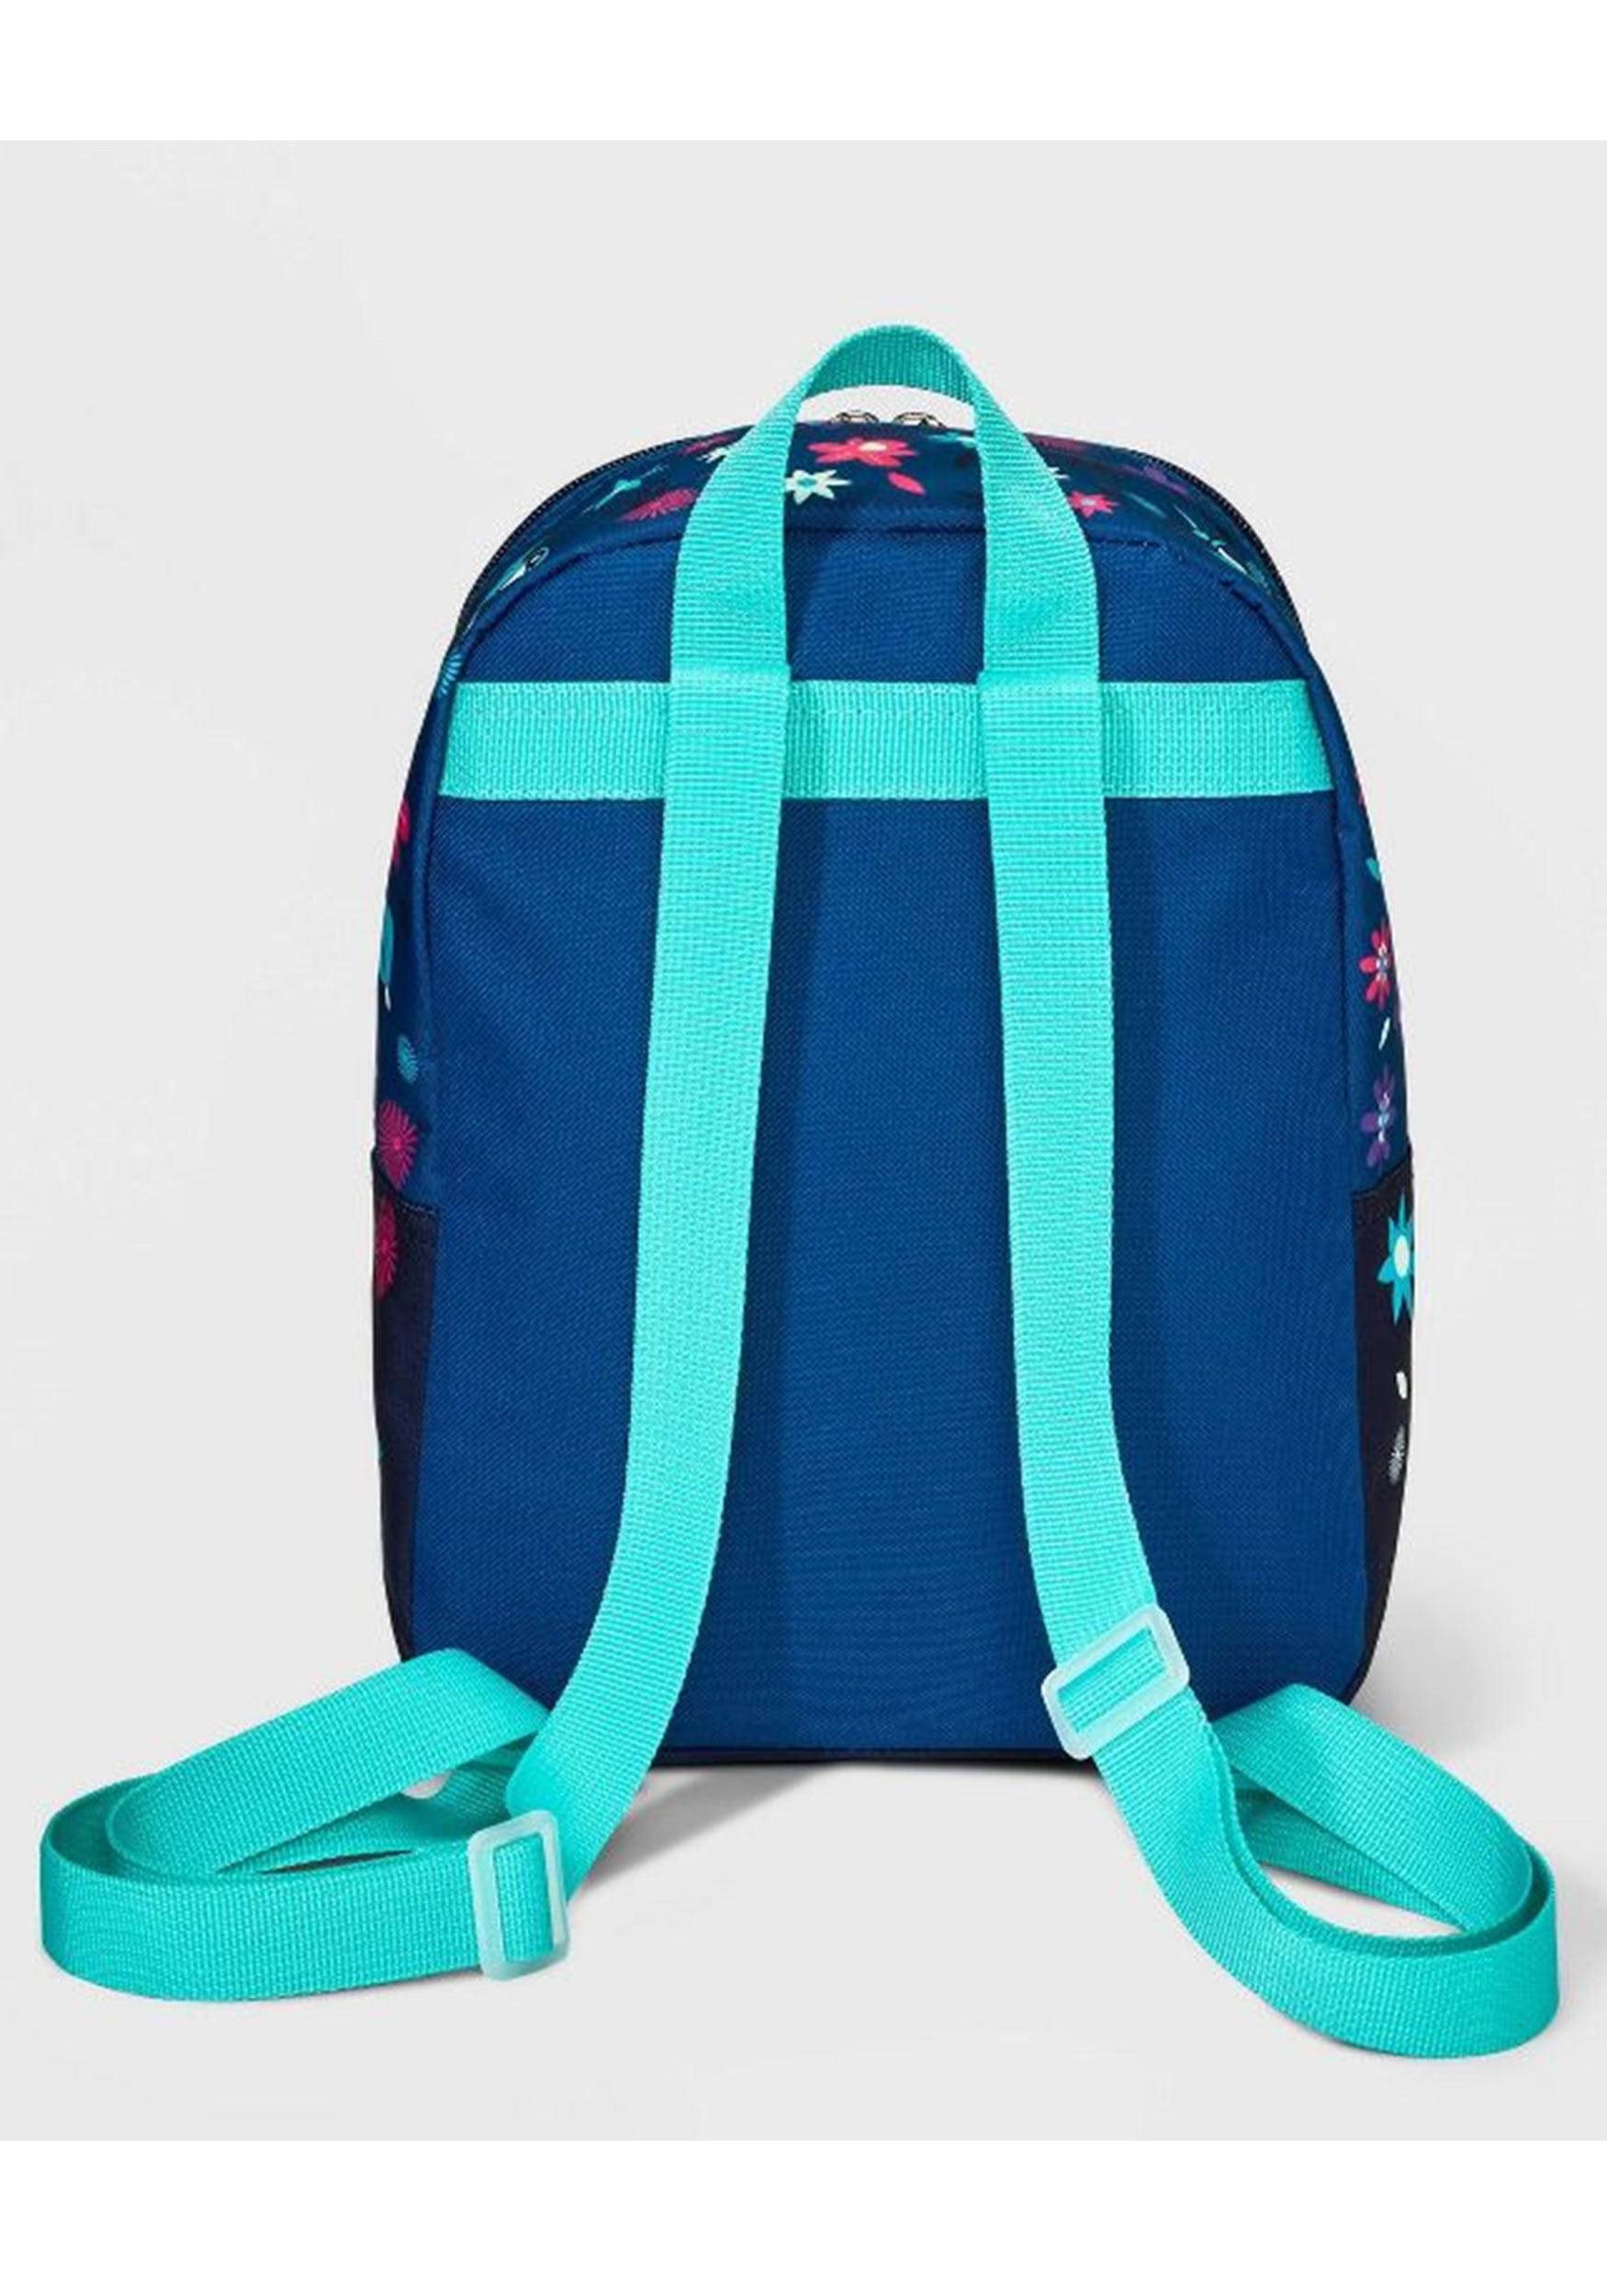 Encanto 10 Inch Backpack